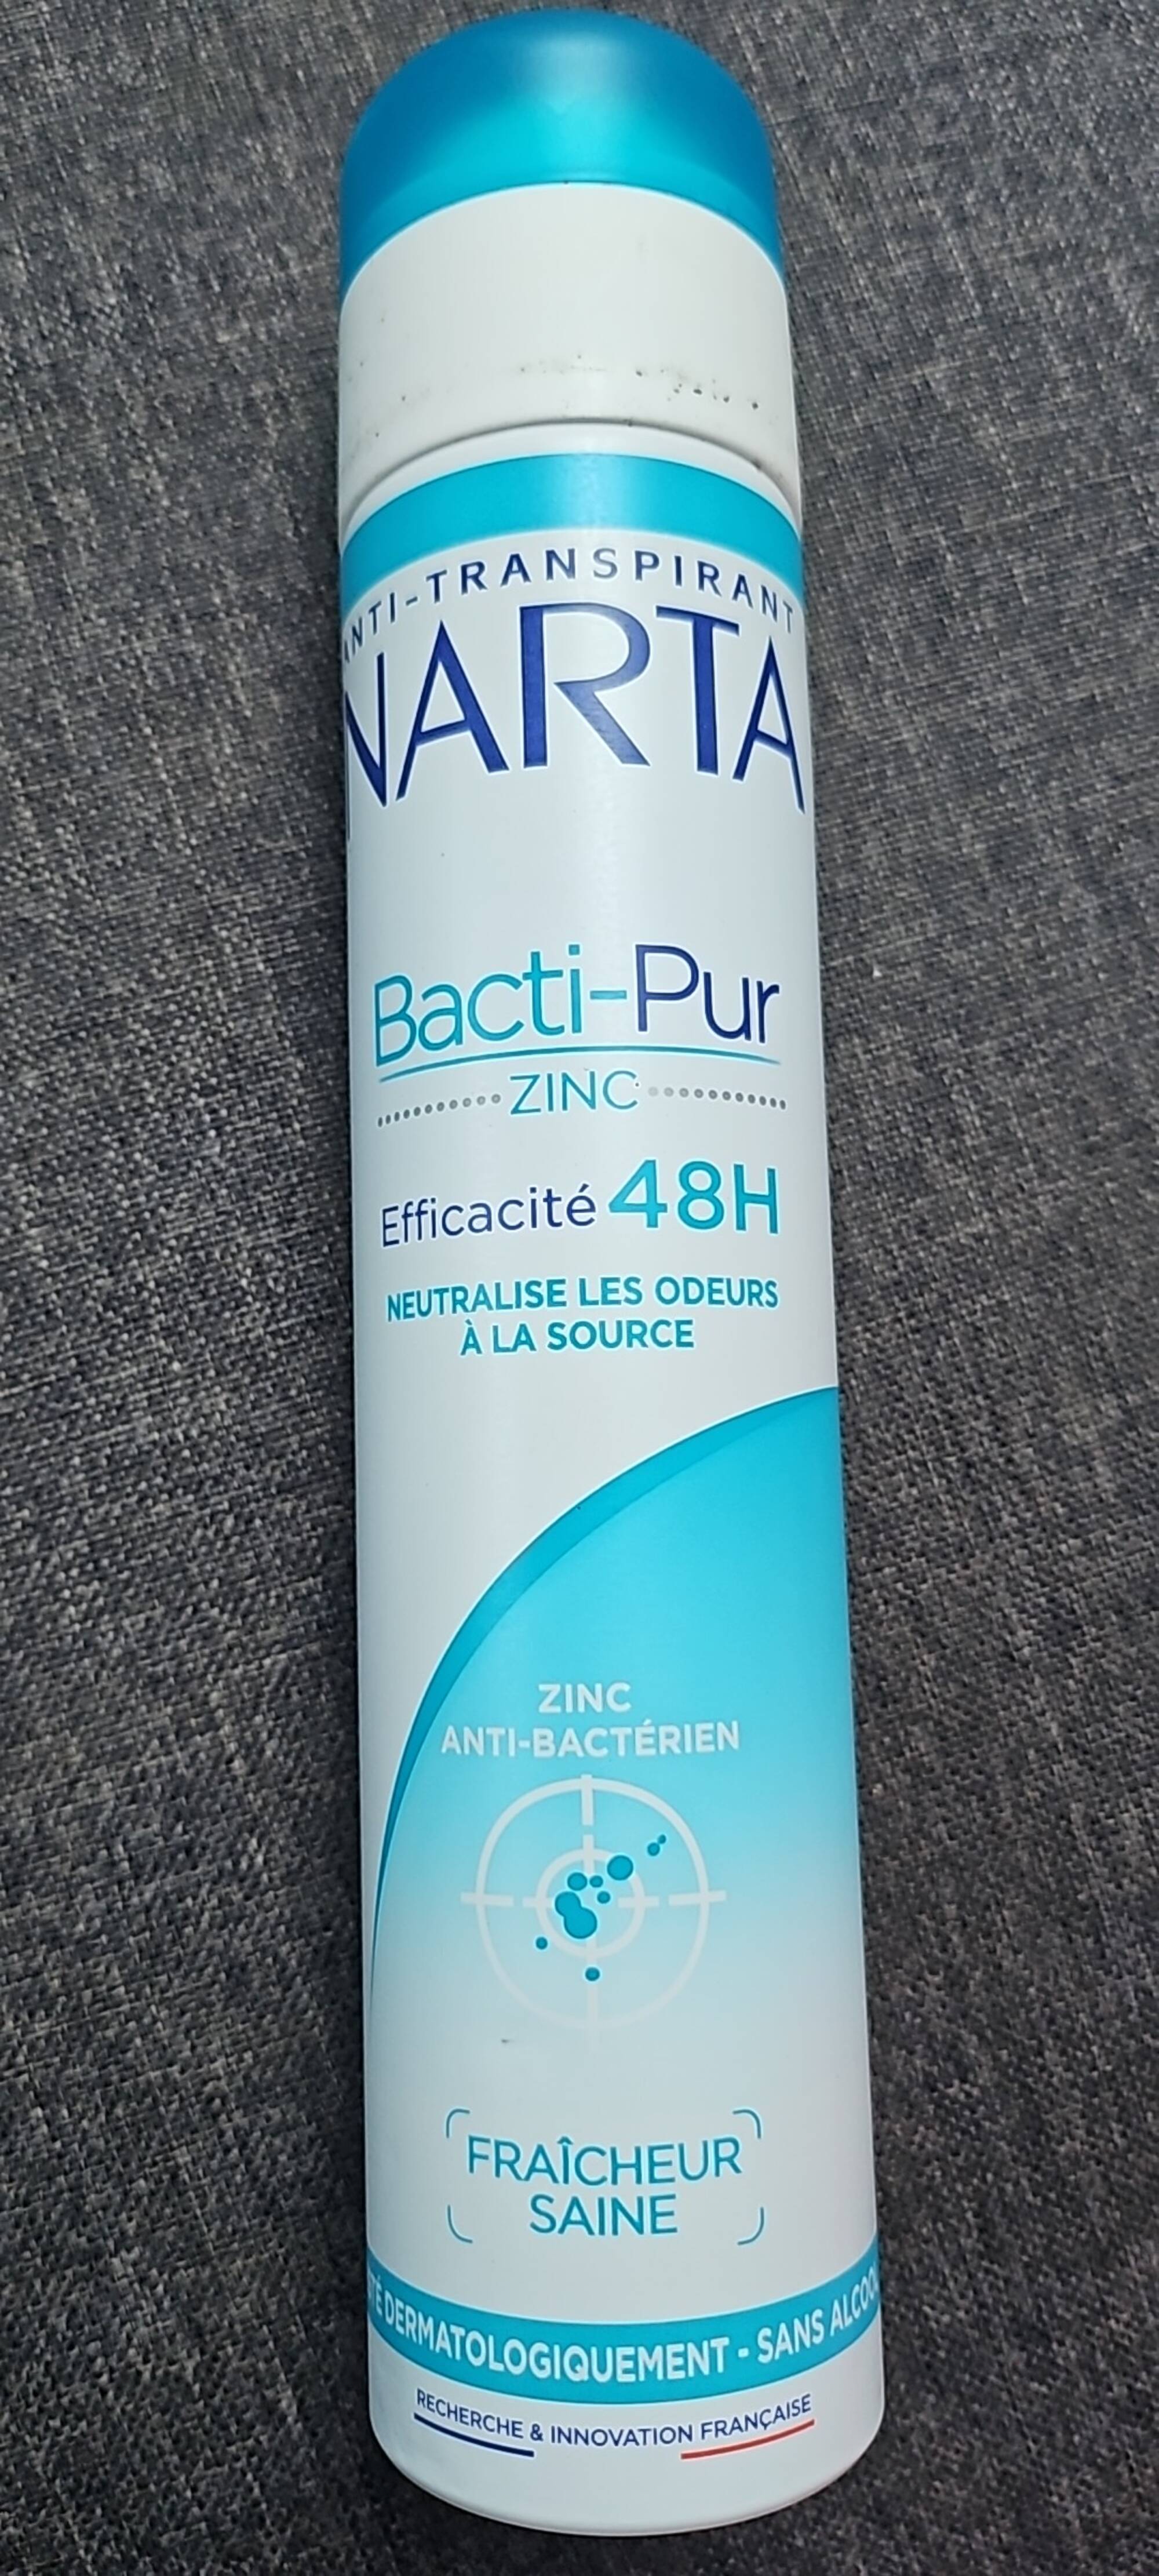 NARTA - Bacti-pur - Déodorant éfficacité 48h